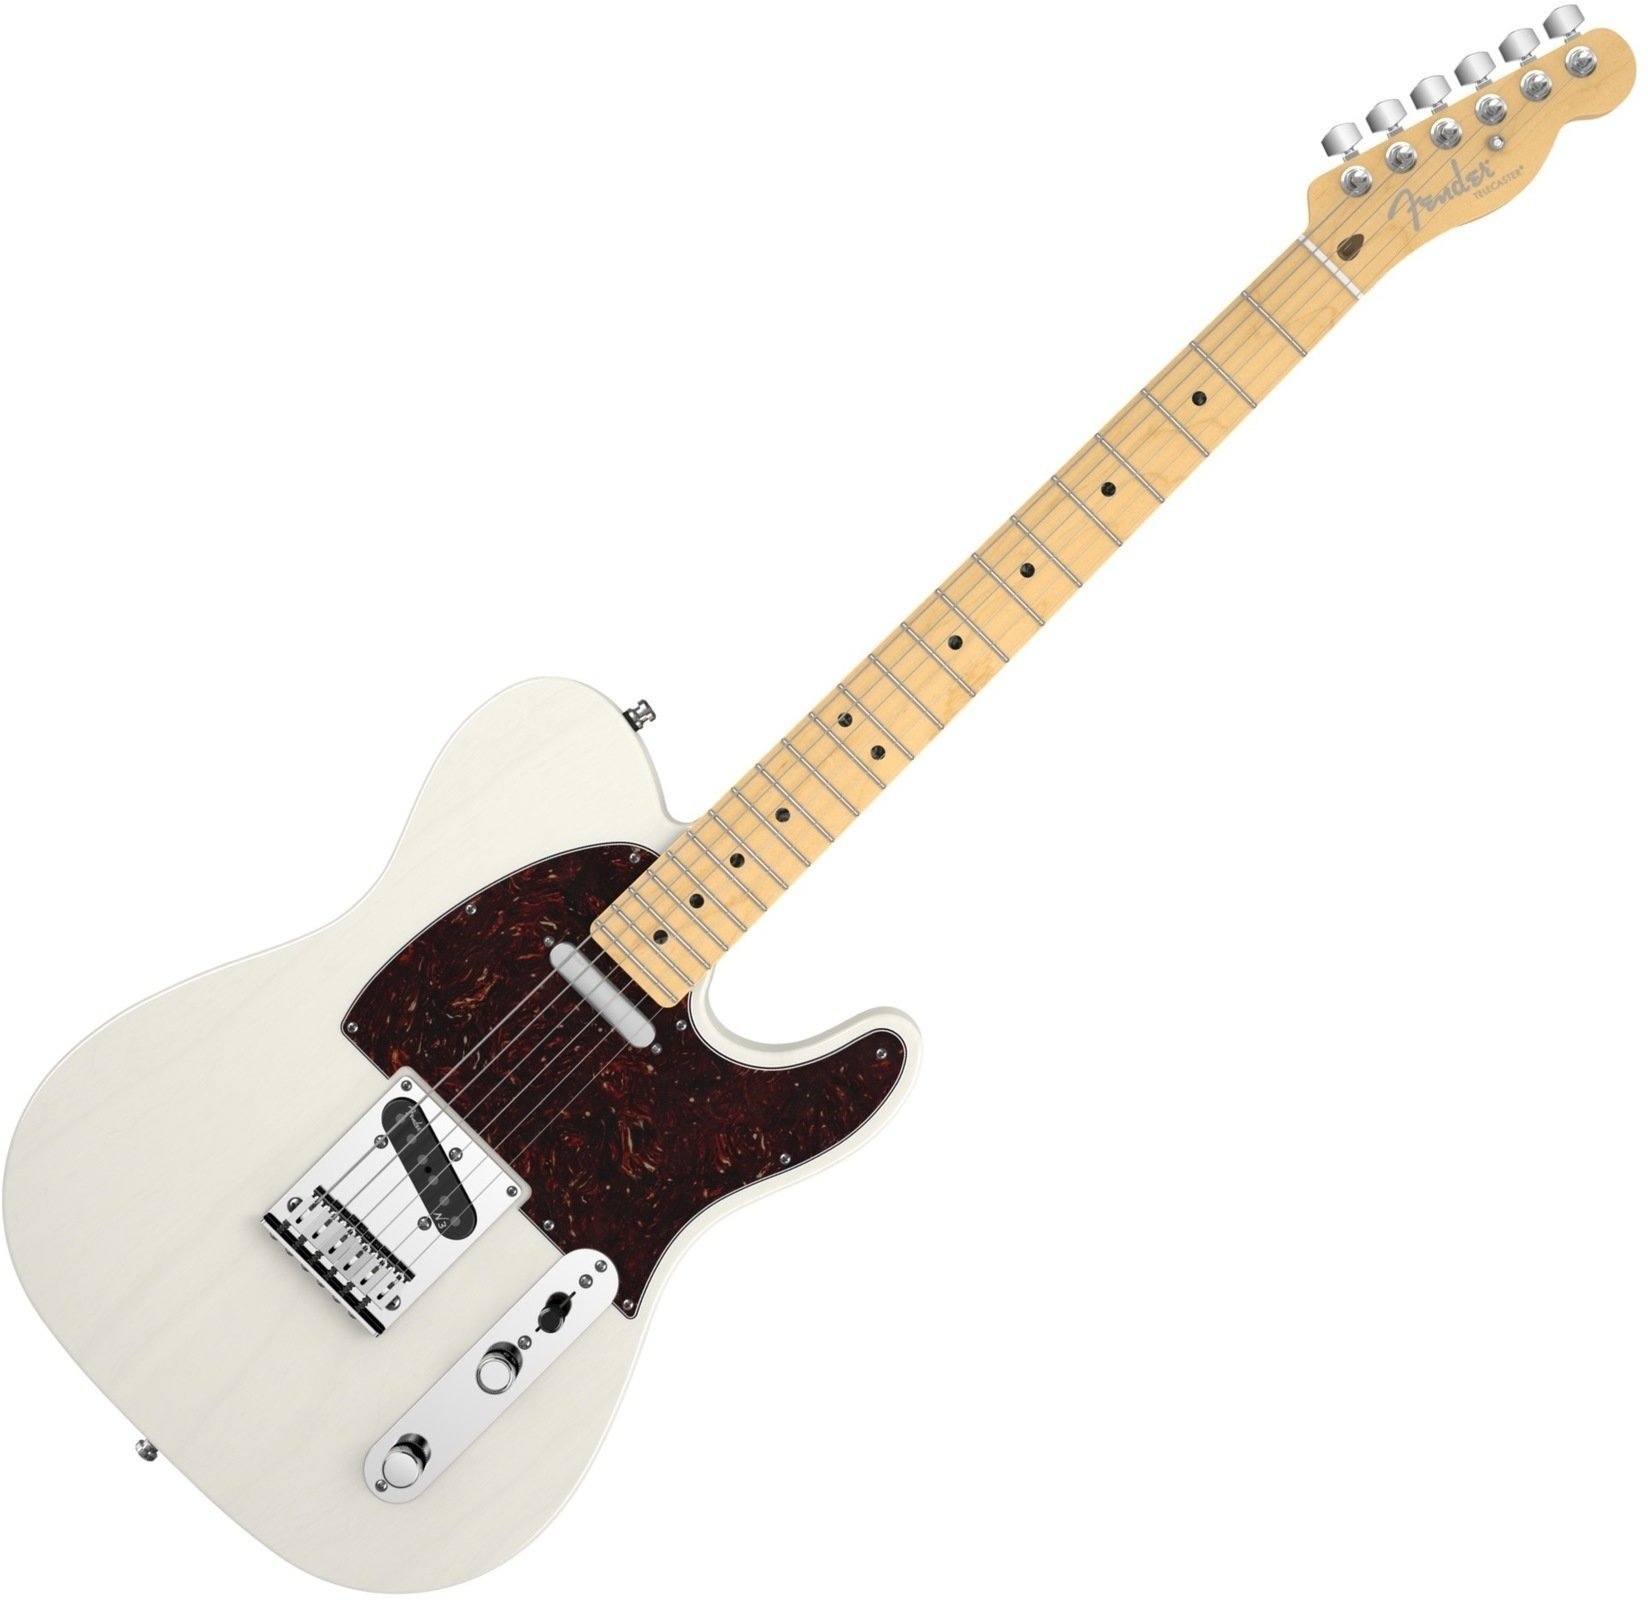 Ηλεκτρική Κιθάρα Fender American Deluxe Telecaster Ash, Maple Fingerboard, White Blonde